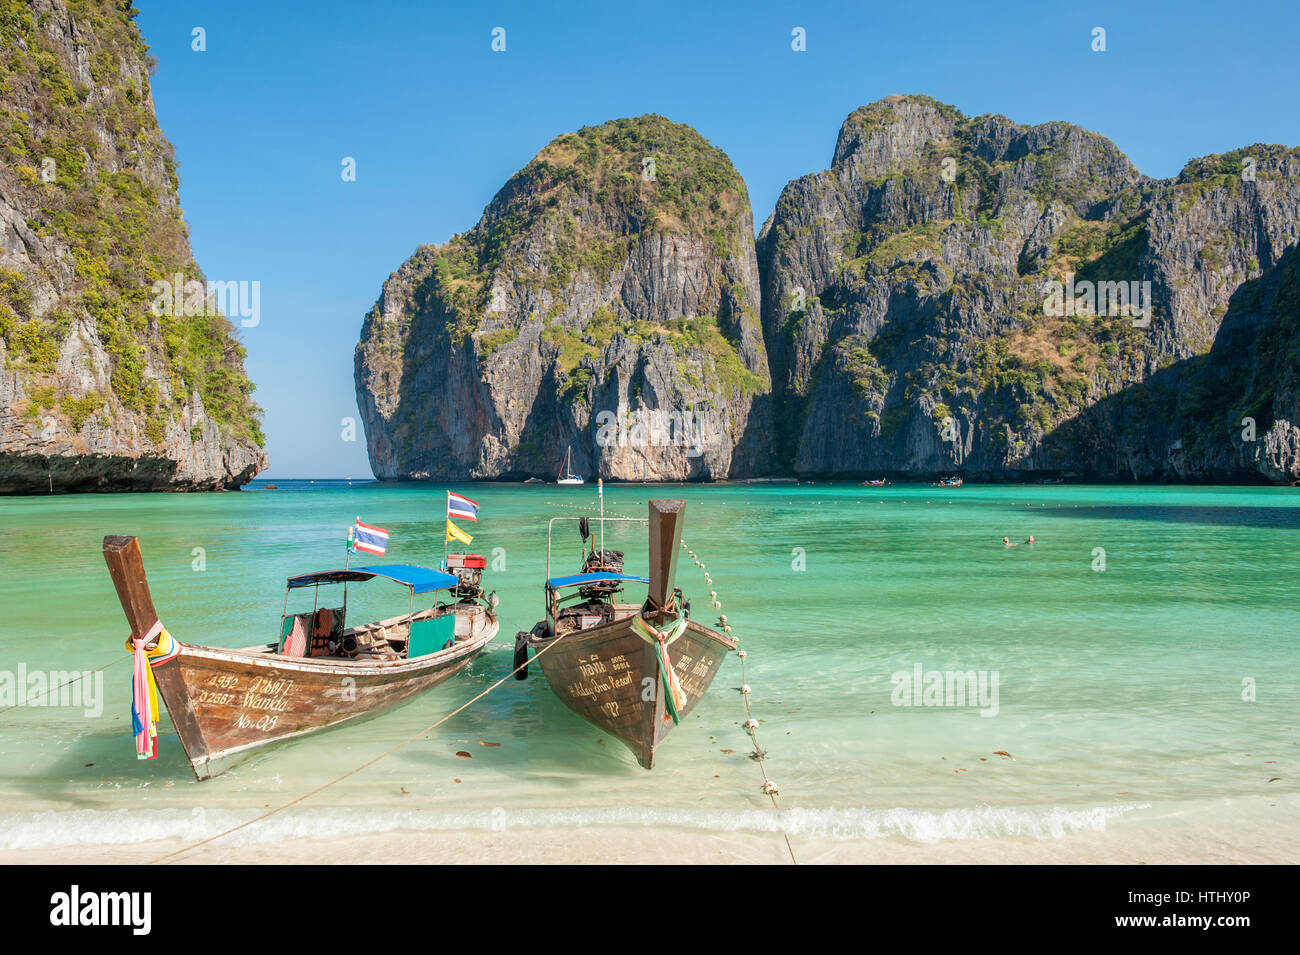 Maya Bay, les îles Phi Phi, Thaïlande est une destination populaire tour de Phuket et connu comme l'emplacement pour le film 'La plage' Banque D'Images